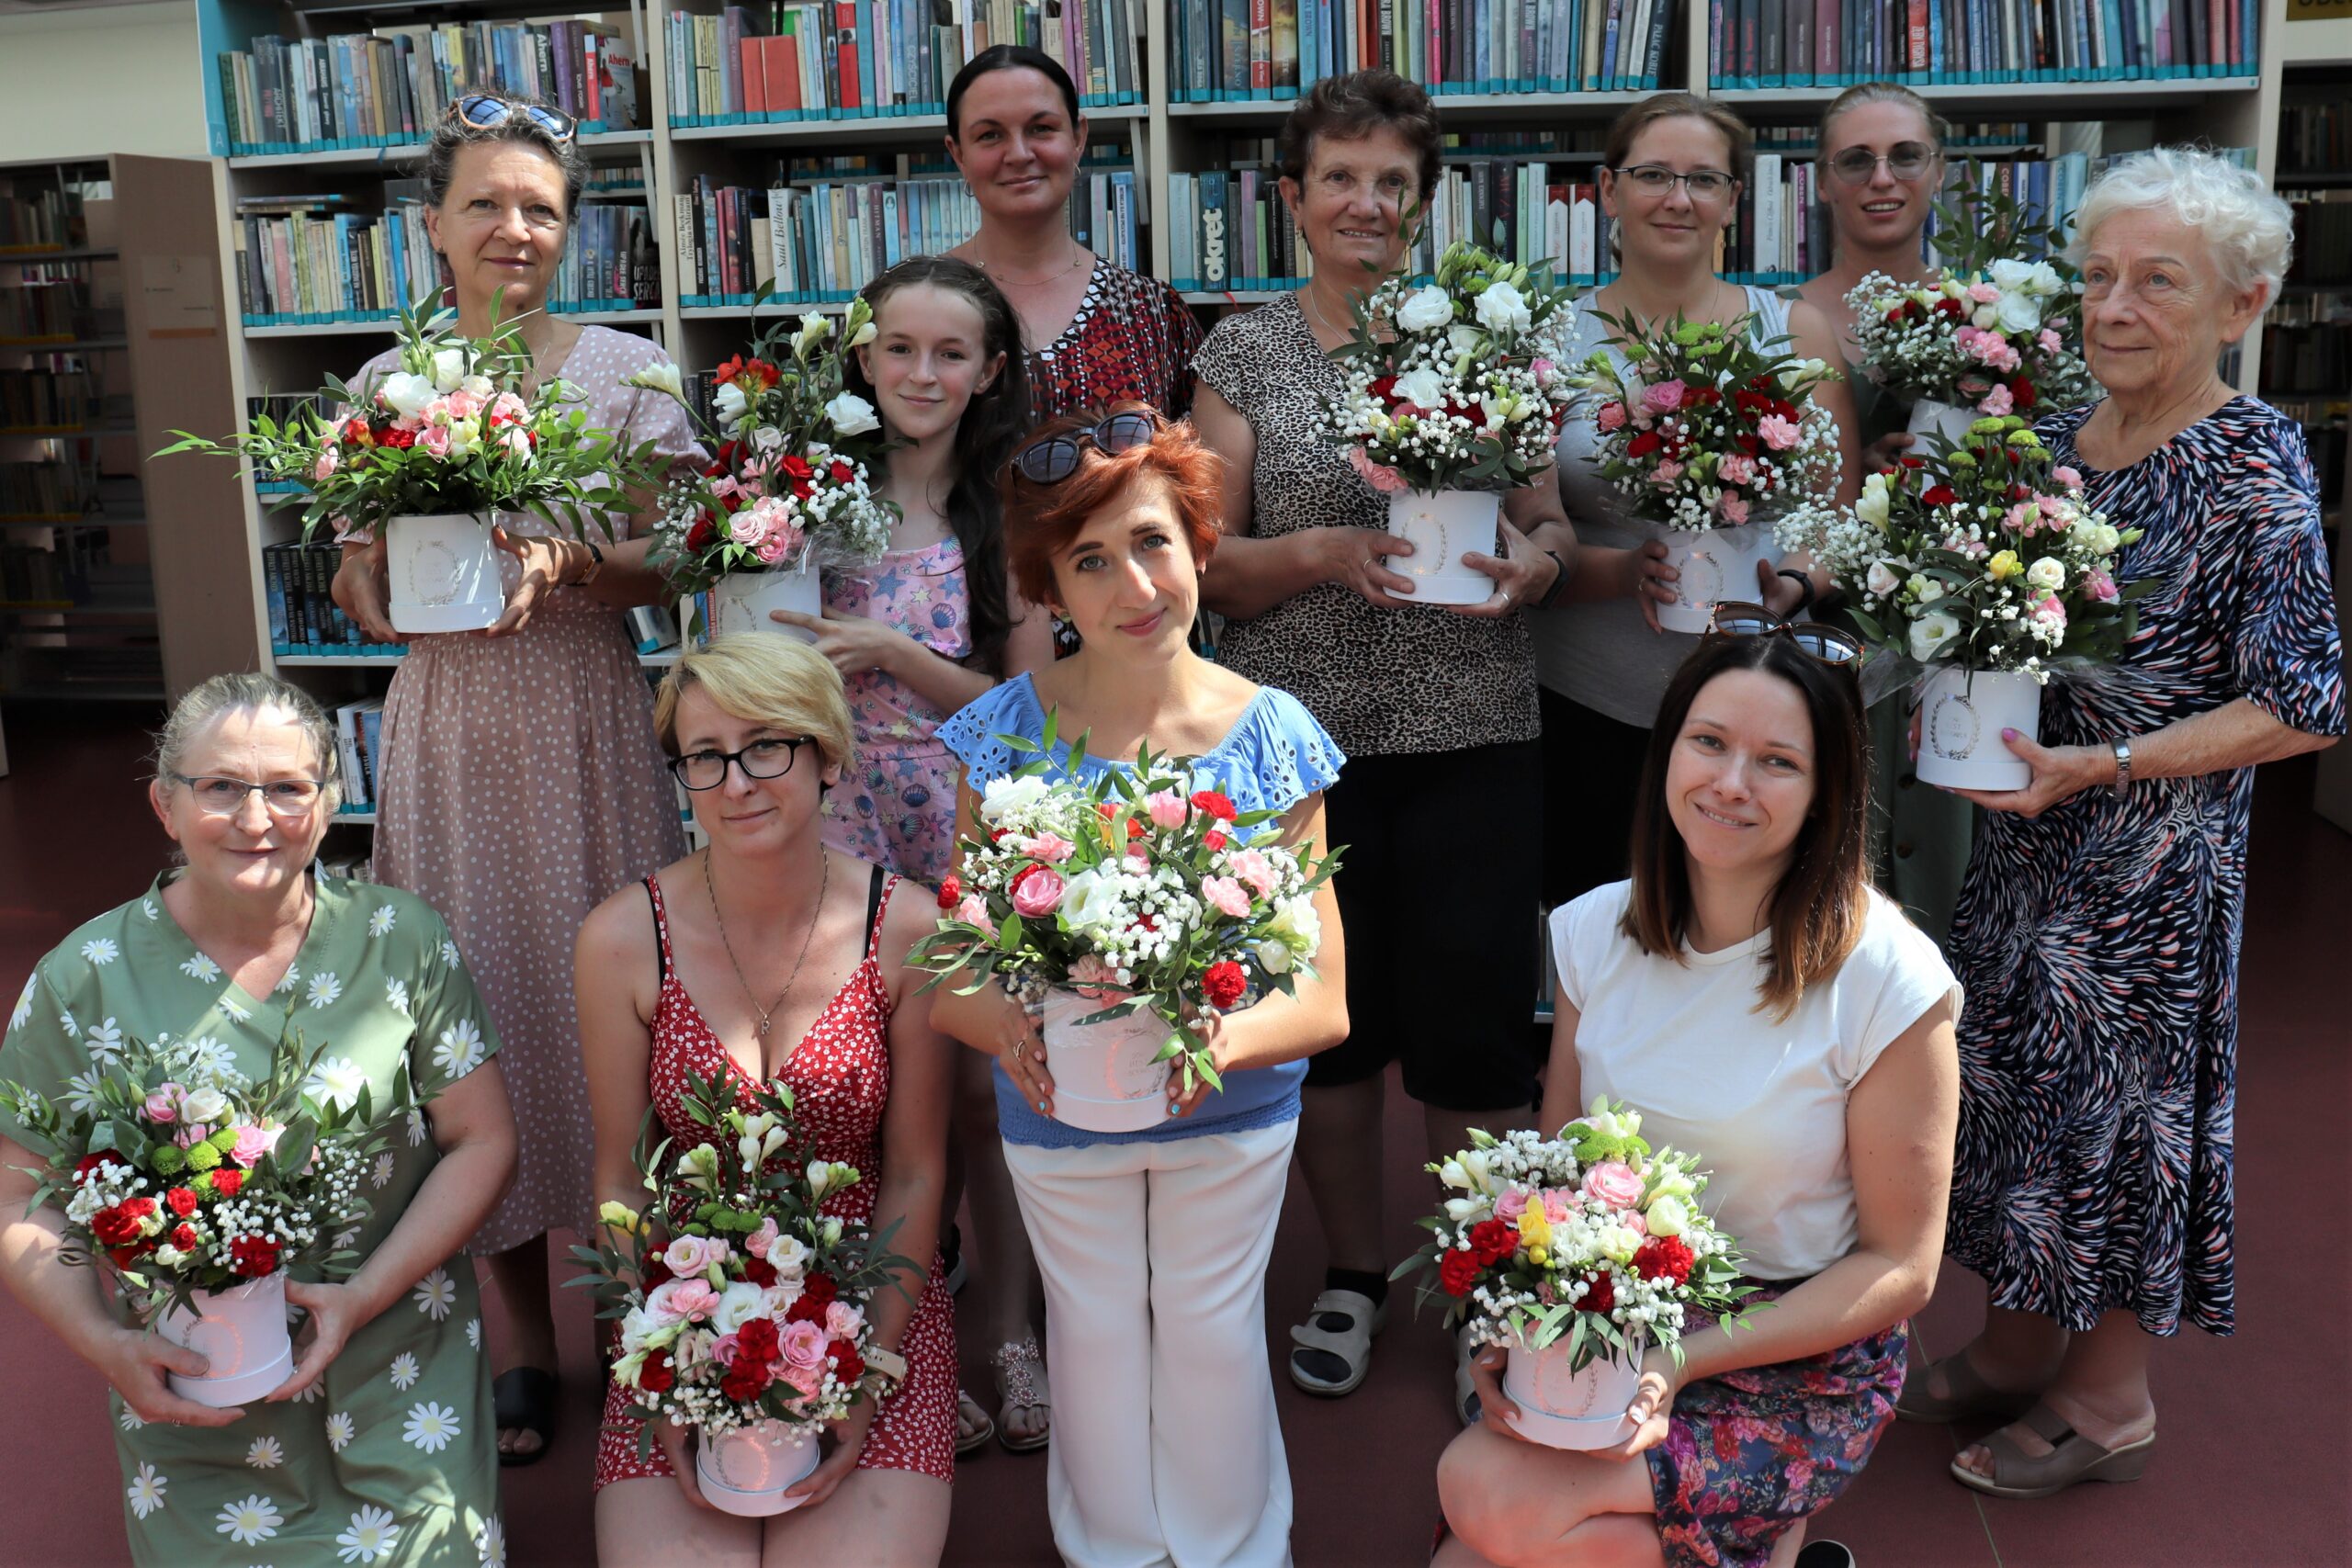 Jedenaście kobiet uśmiechniętych kobiet pozuje do zdjęcia w bibliotece. Na rękach trzymają wykonane przez siebie kompozycje florystyczne. 